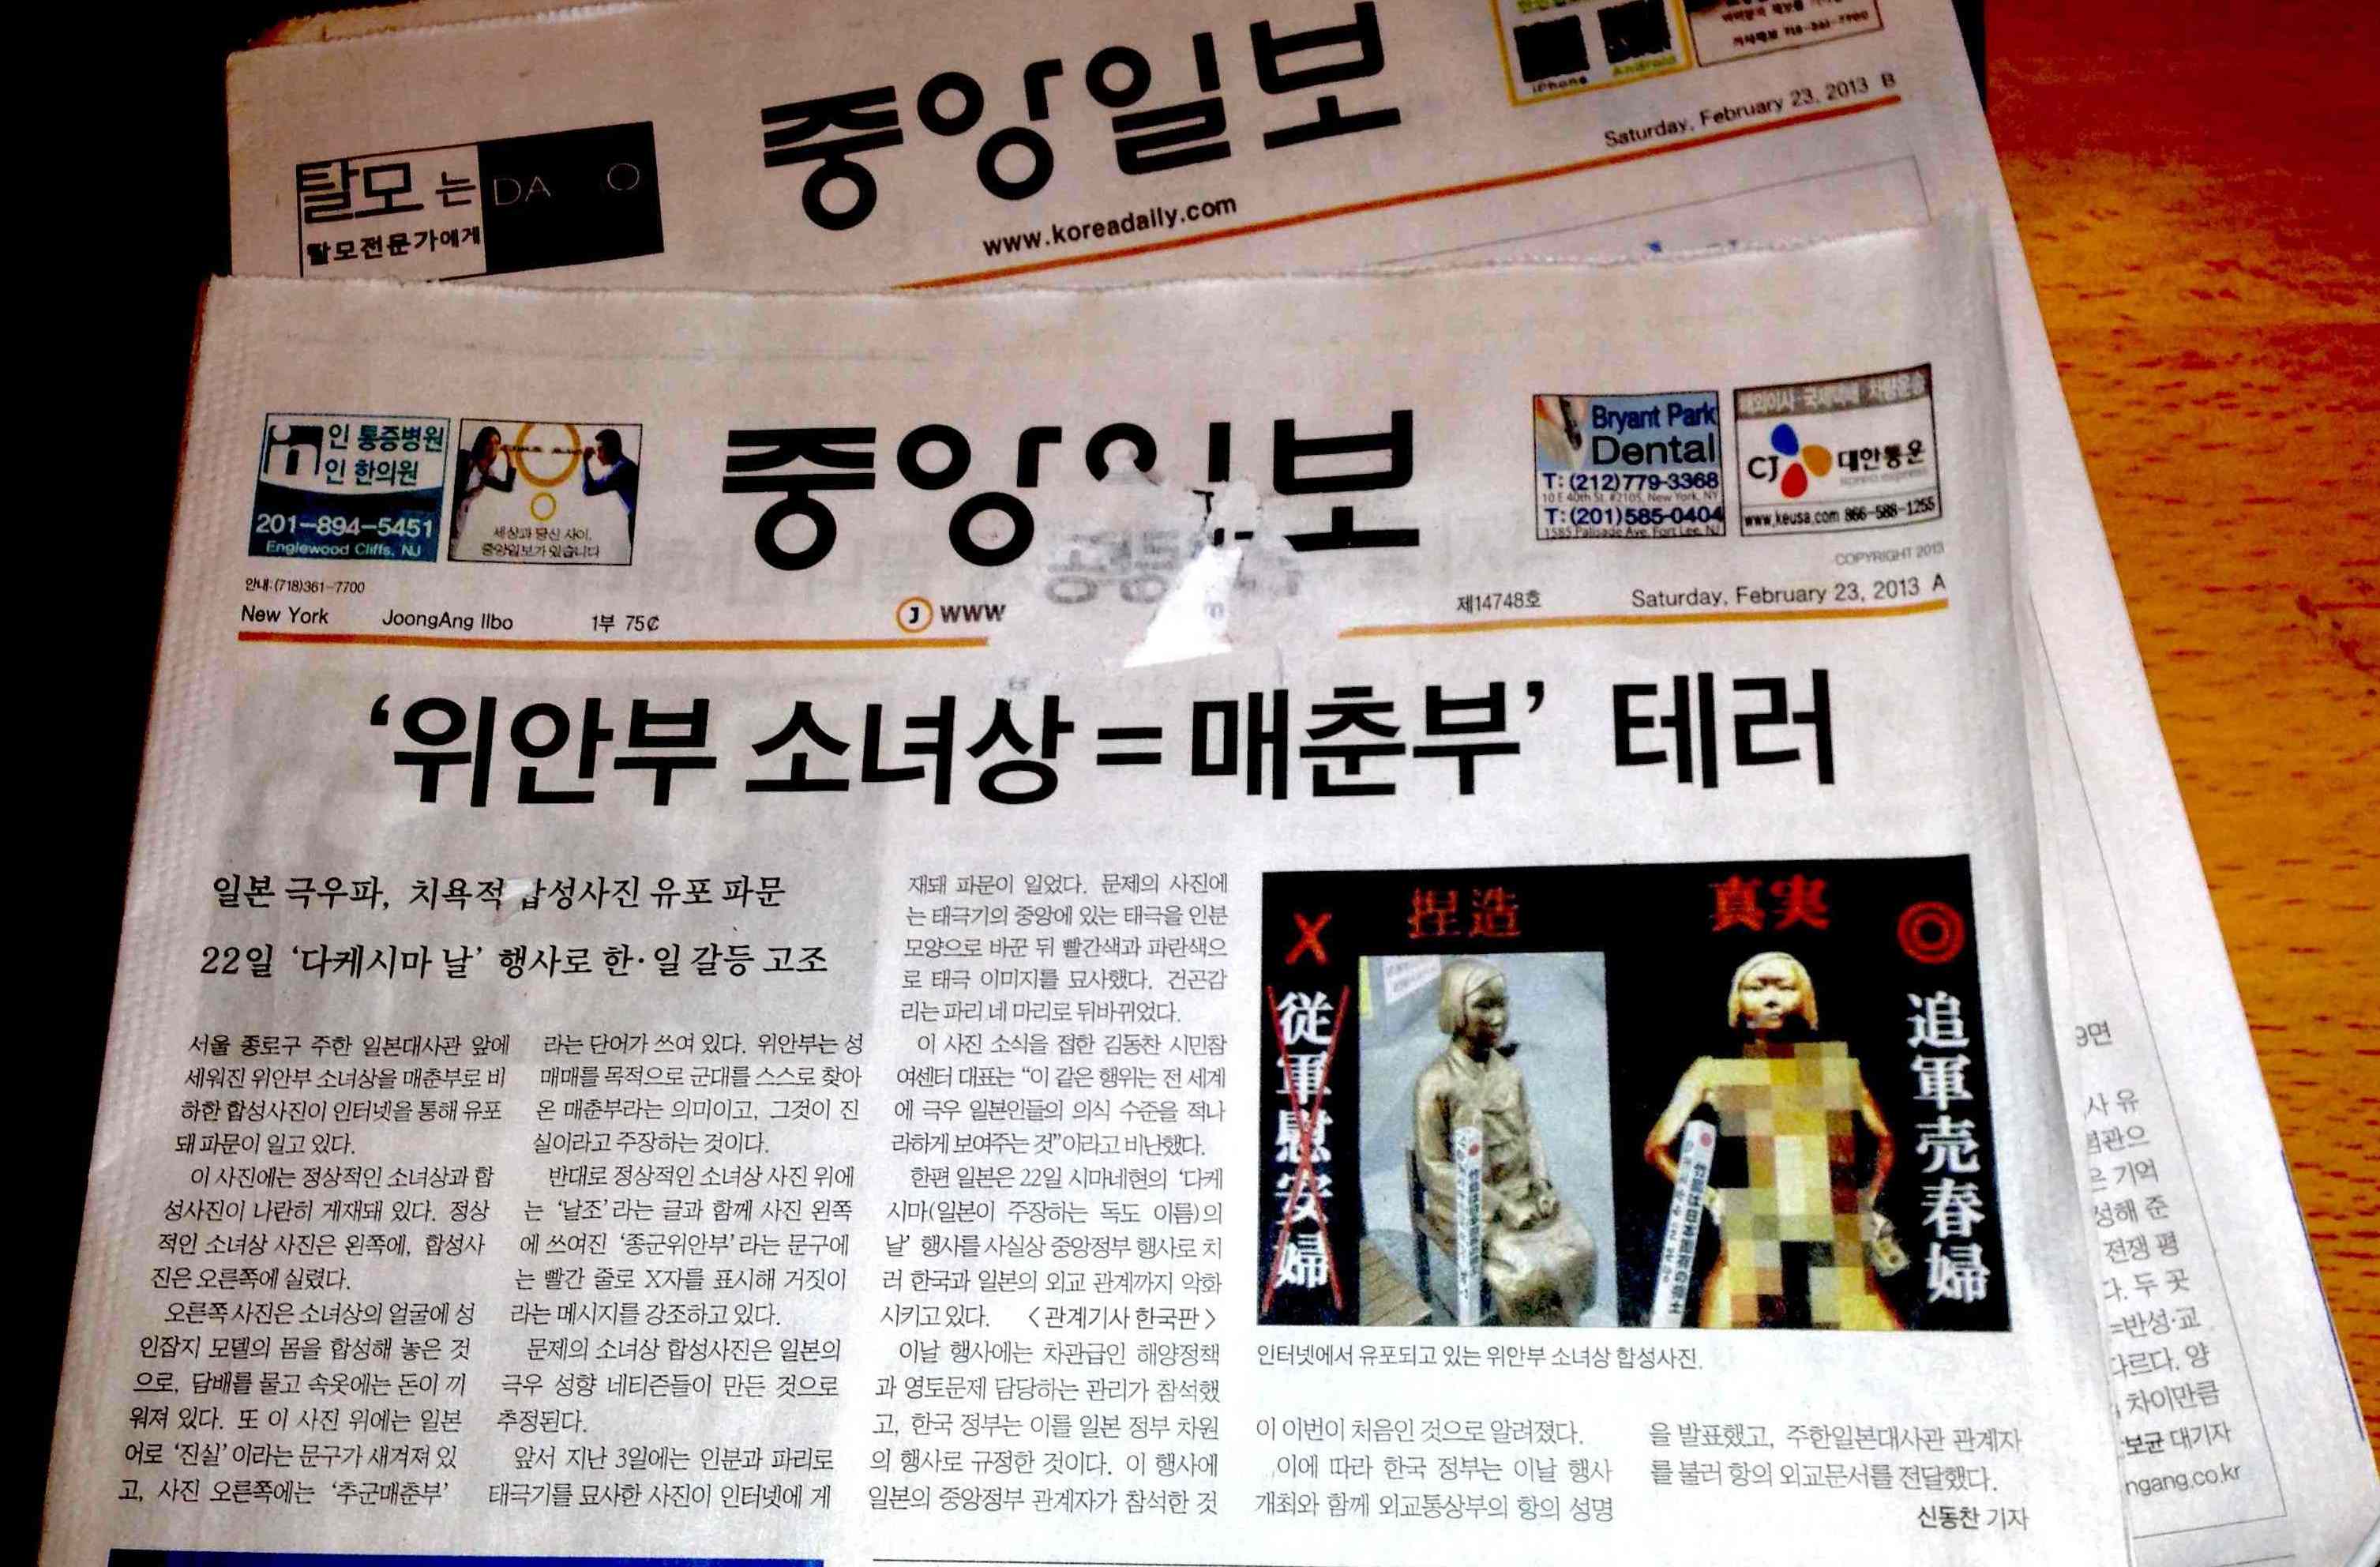 韓國每日新聞 Korea Daily 紐約版 2月23日的頭版